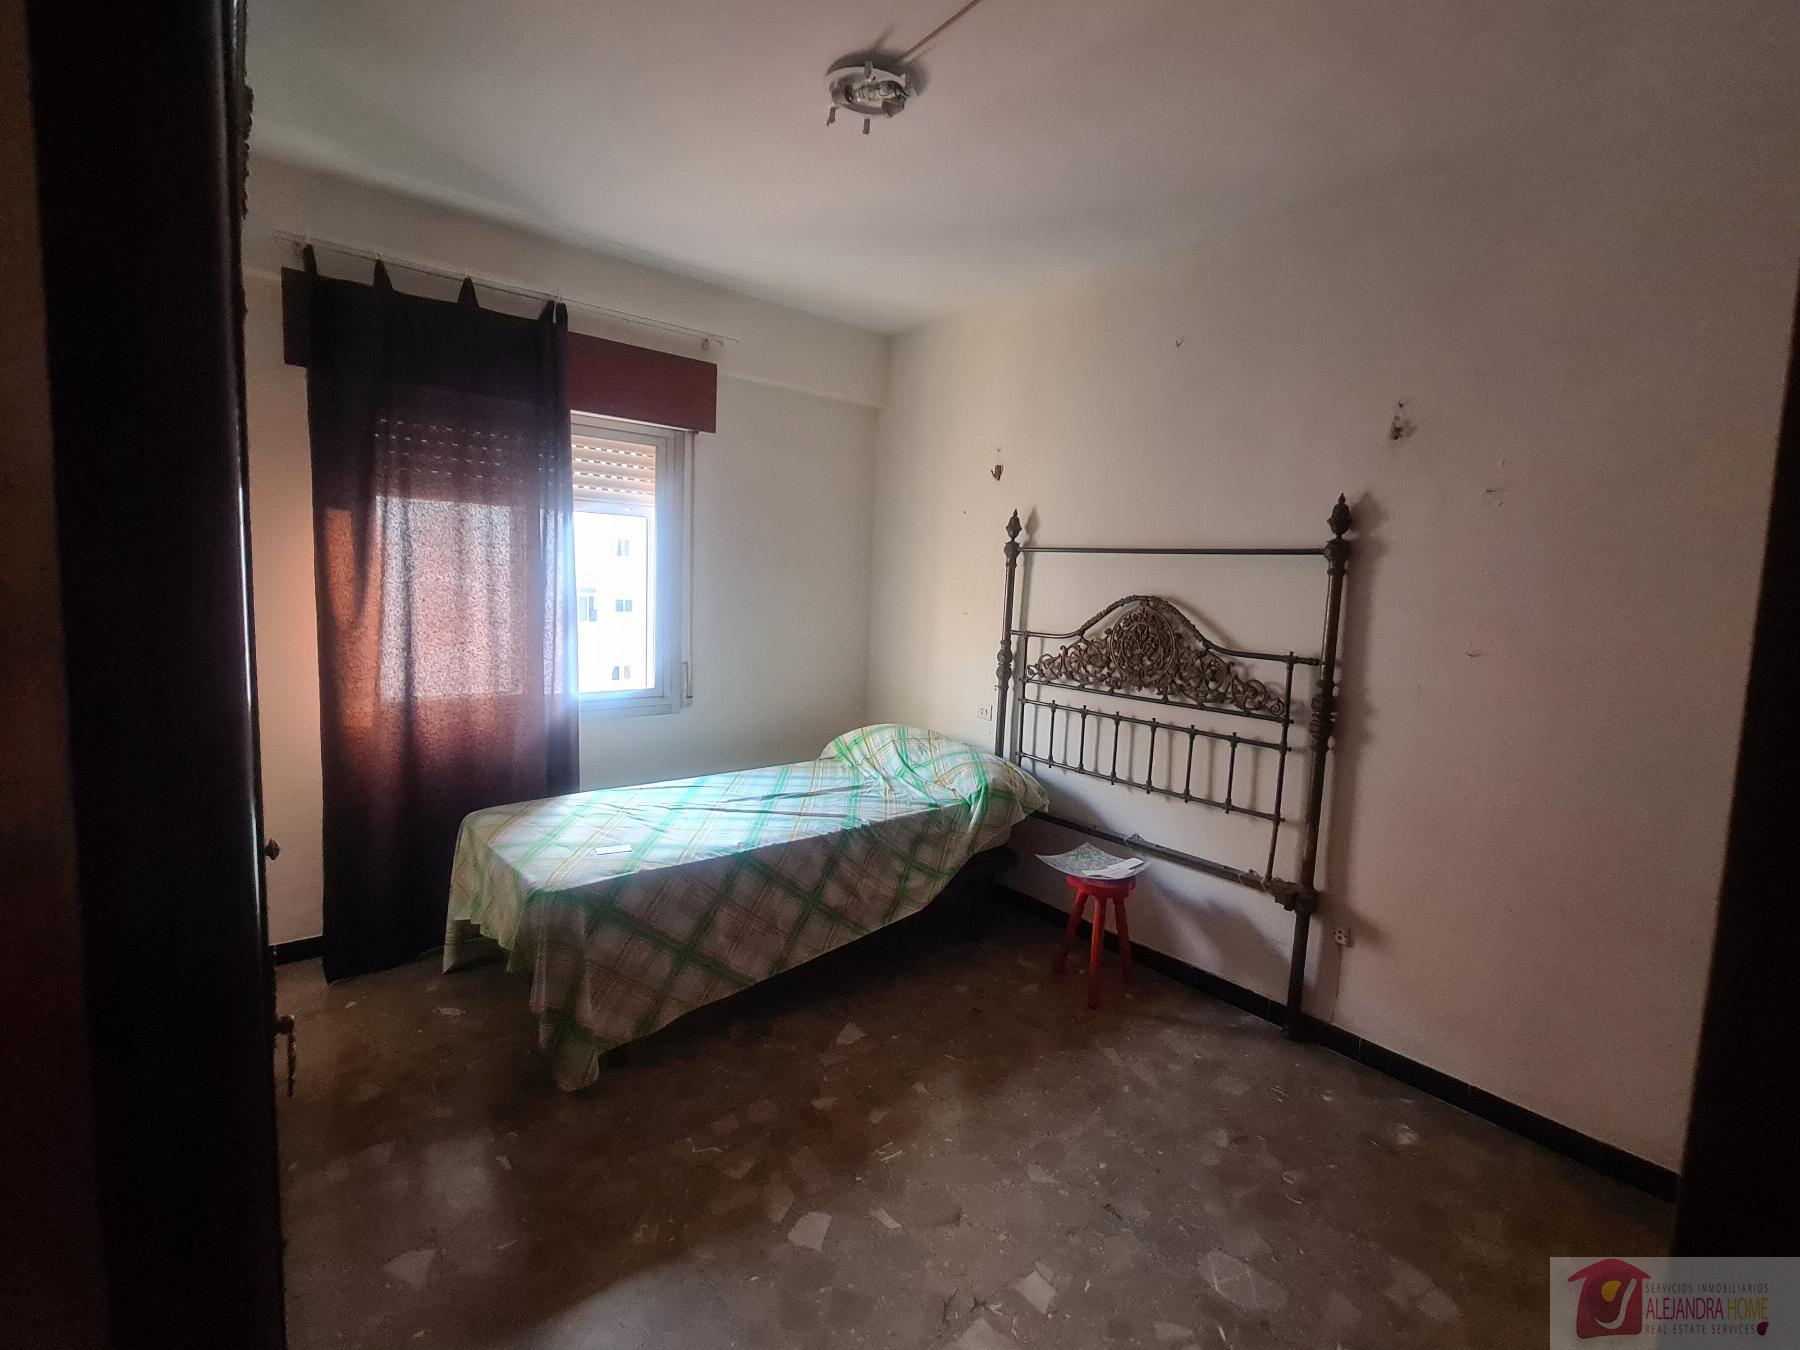 Salg av leilighet i Fuengirola